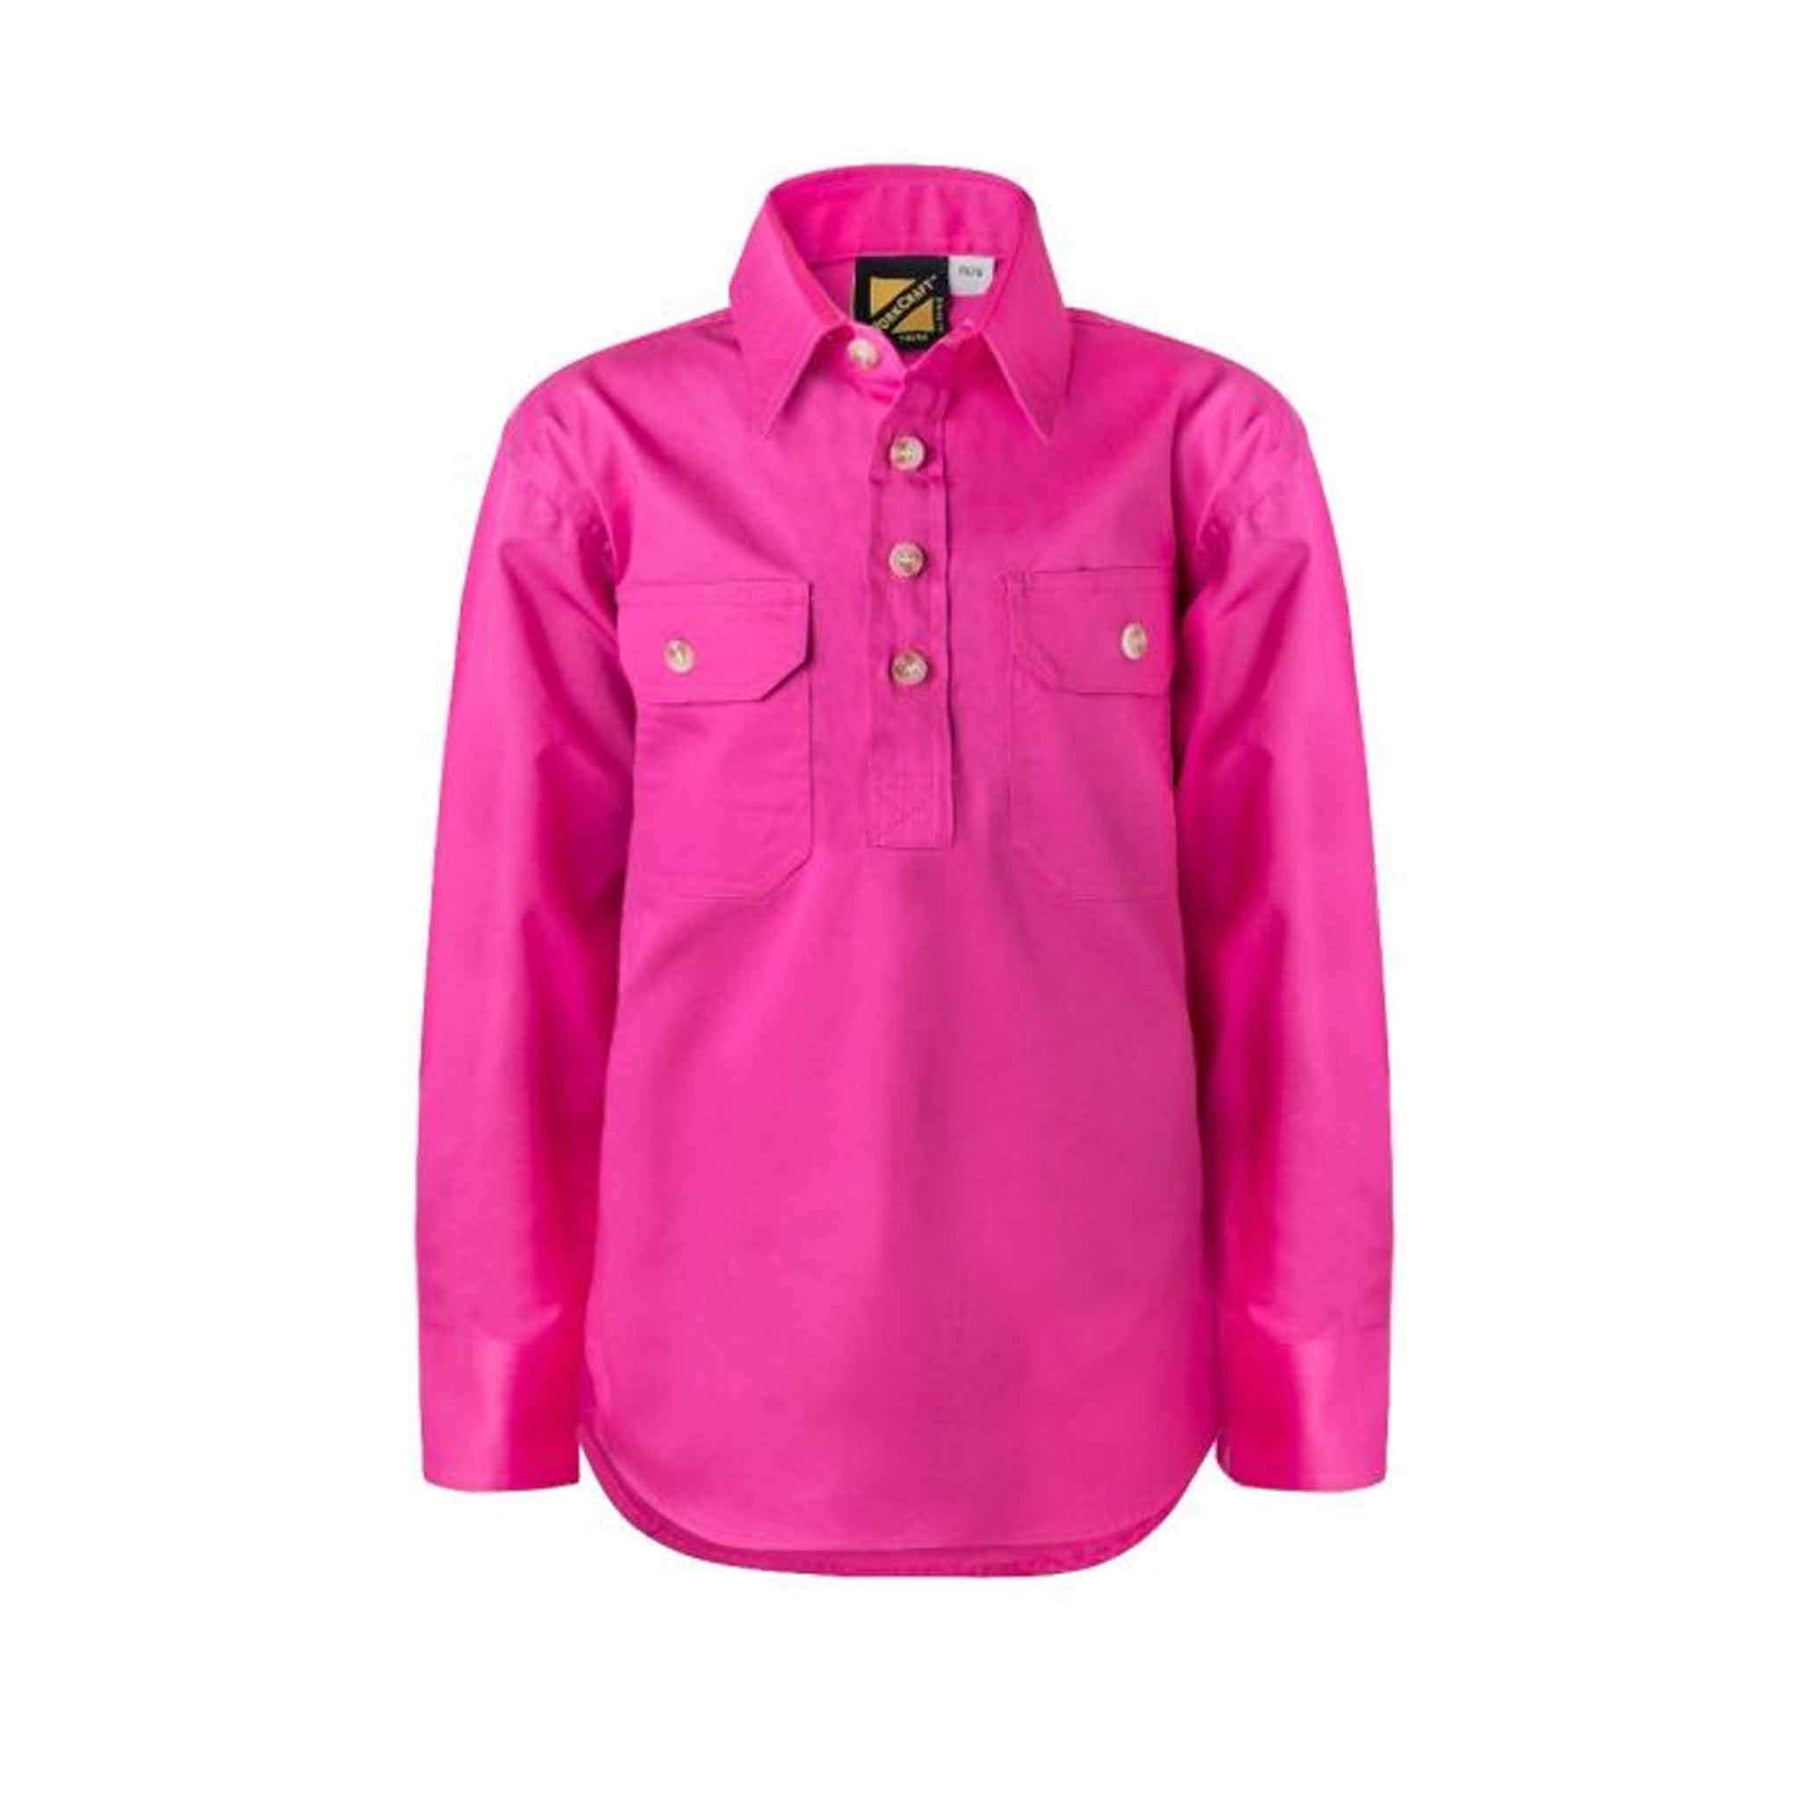 kids lightweight half placket long sleeve shirt in pink